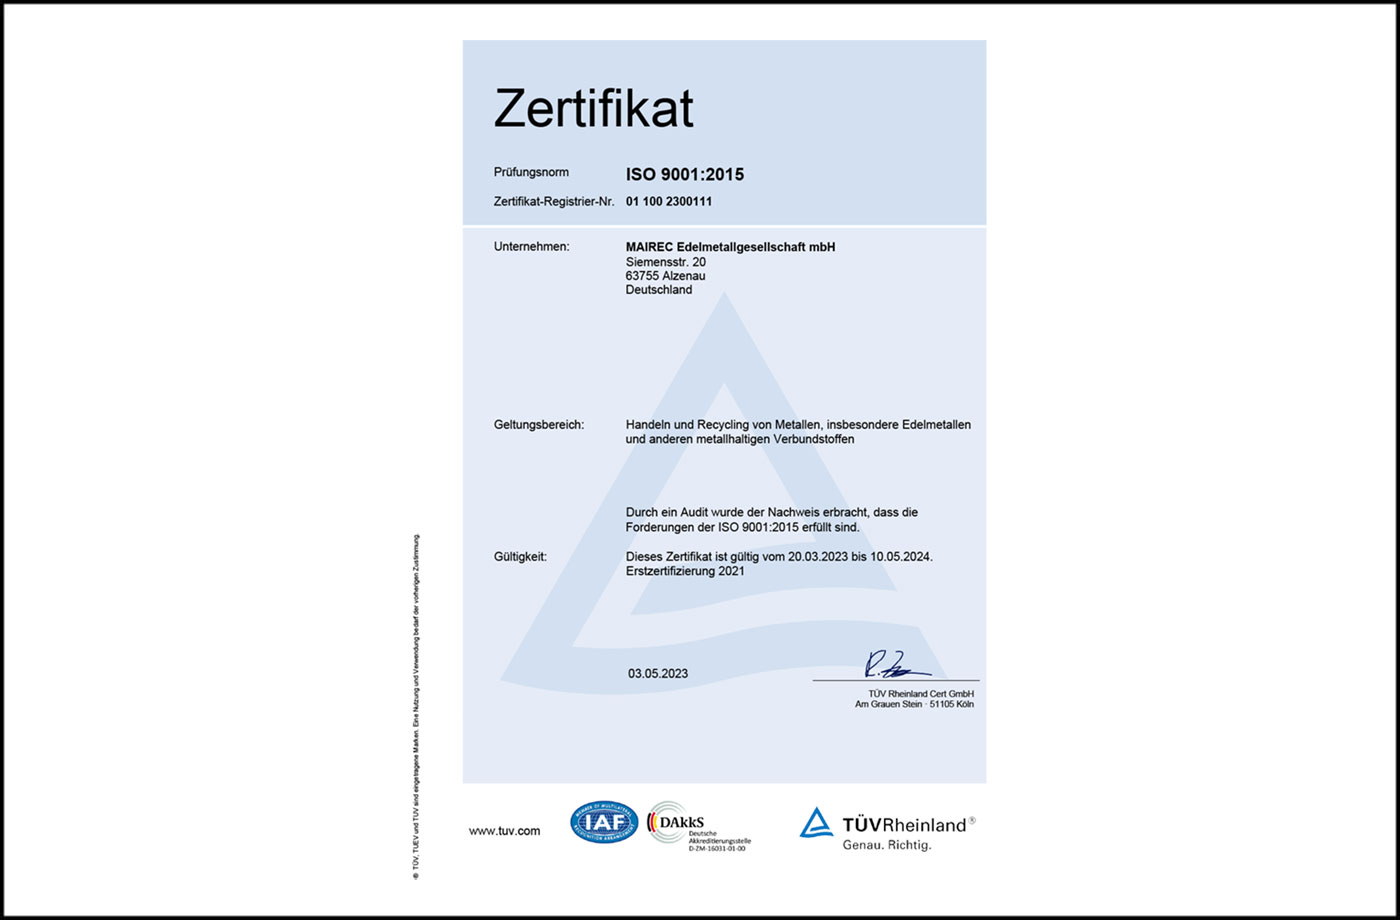 mairec edelmetall precious metal recycling zertifikat ISO 9001 deutsch